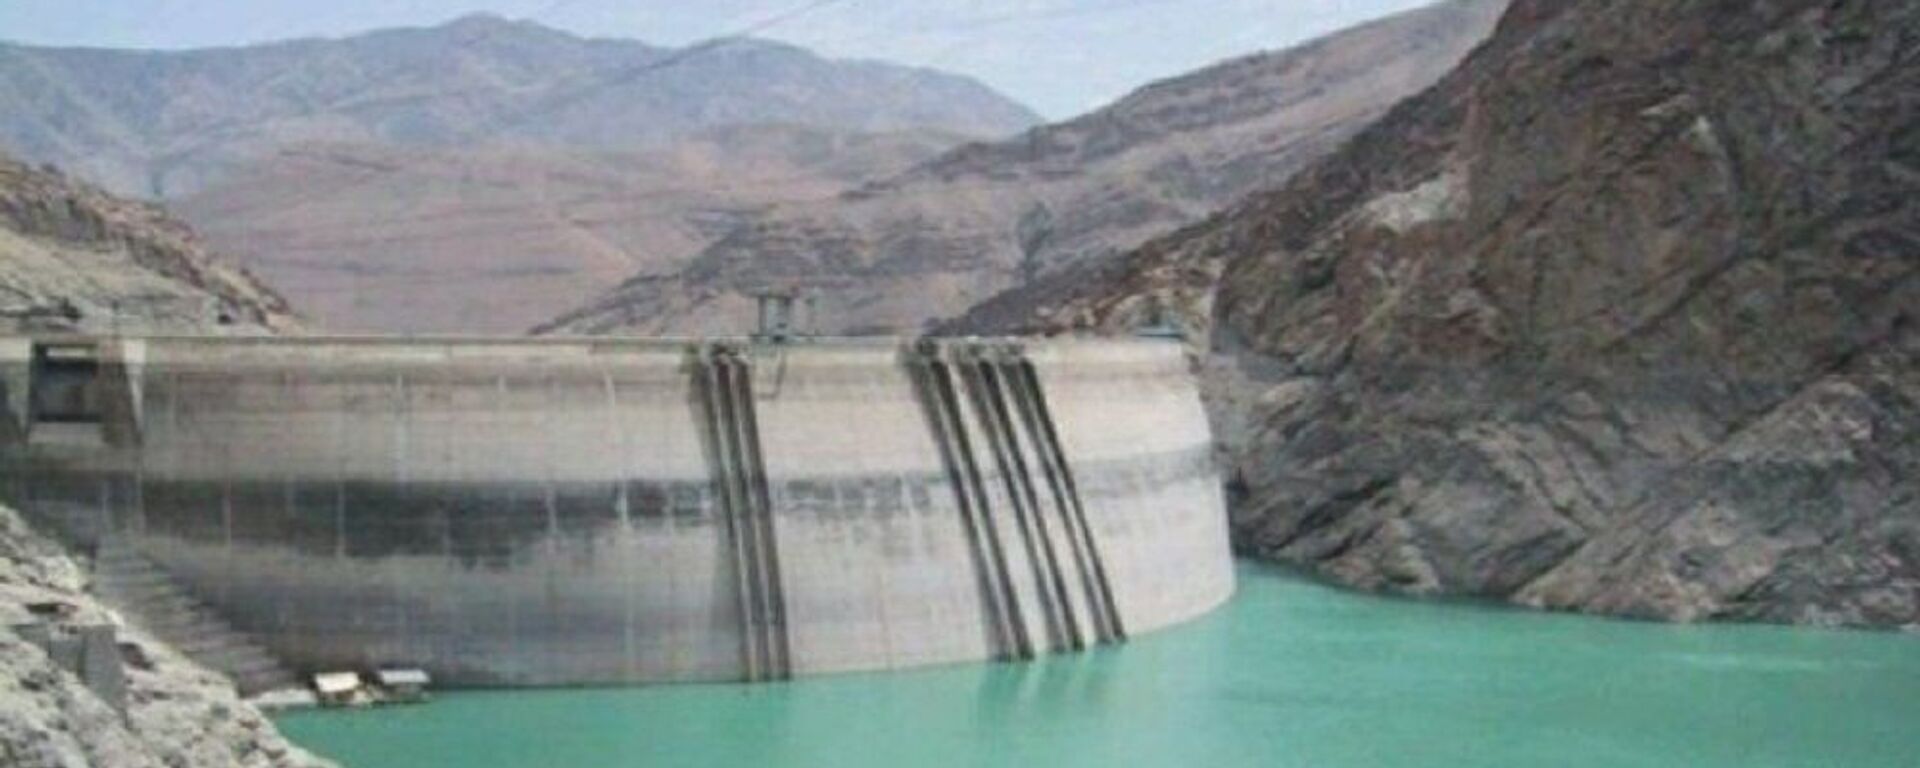 حجم آب مخازن سدهای ایران 27 درصد کاهش یافته است - اسپوتنیک ایران  , 1920, 31.05.2021